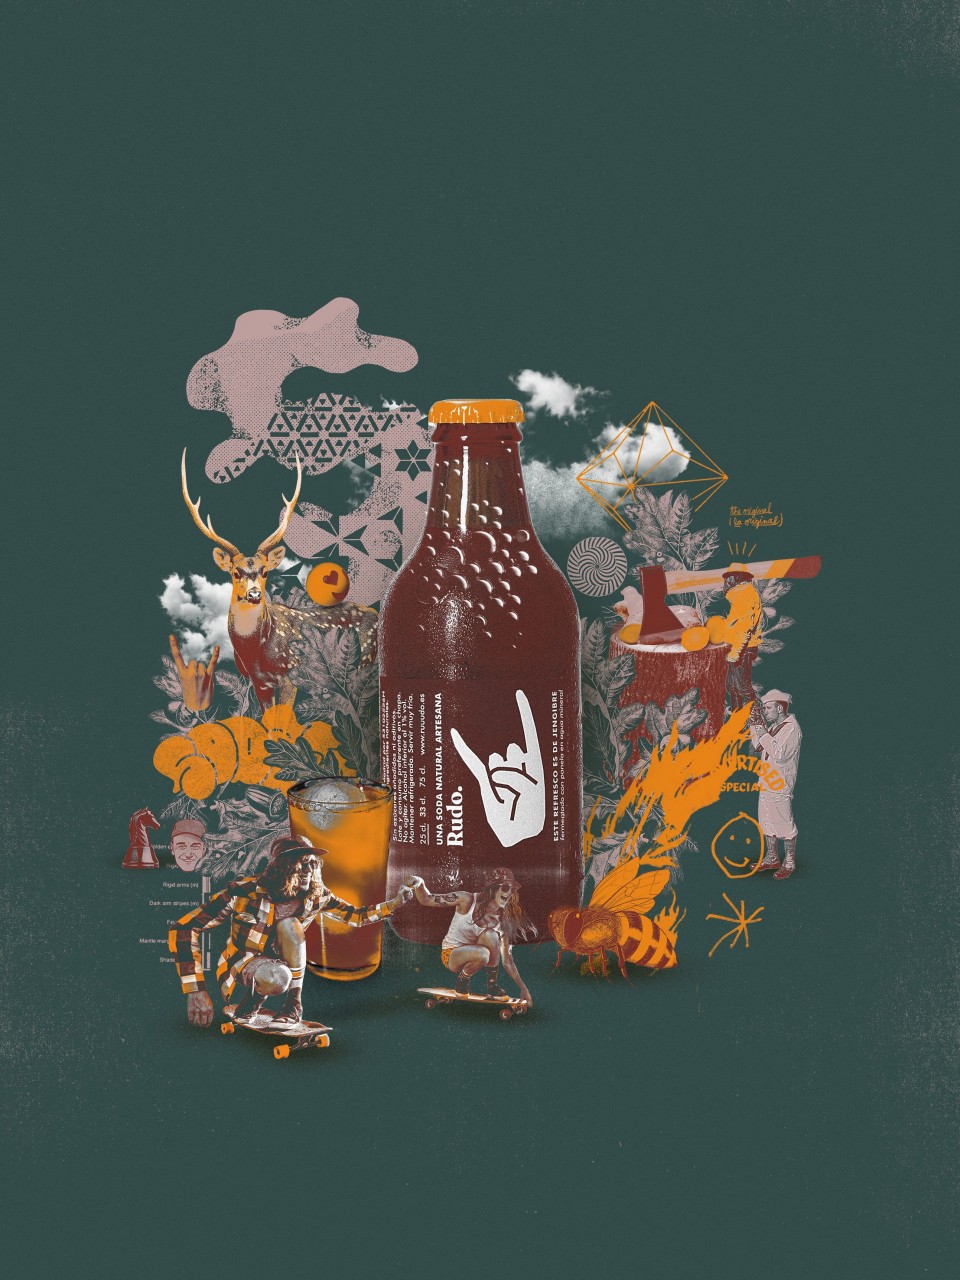 Ilustración de una botella de Rudo hecha por Max-o-matic